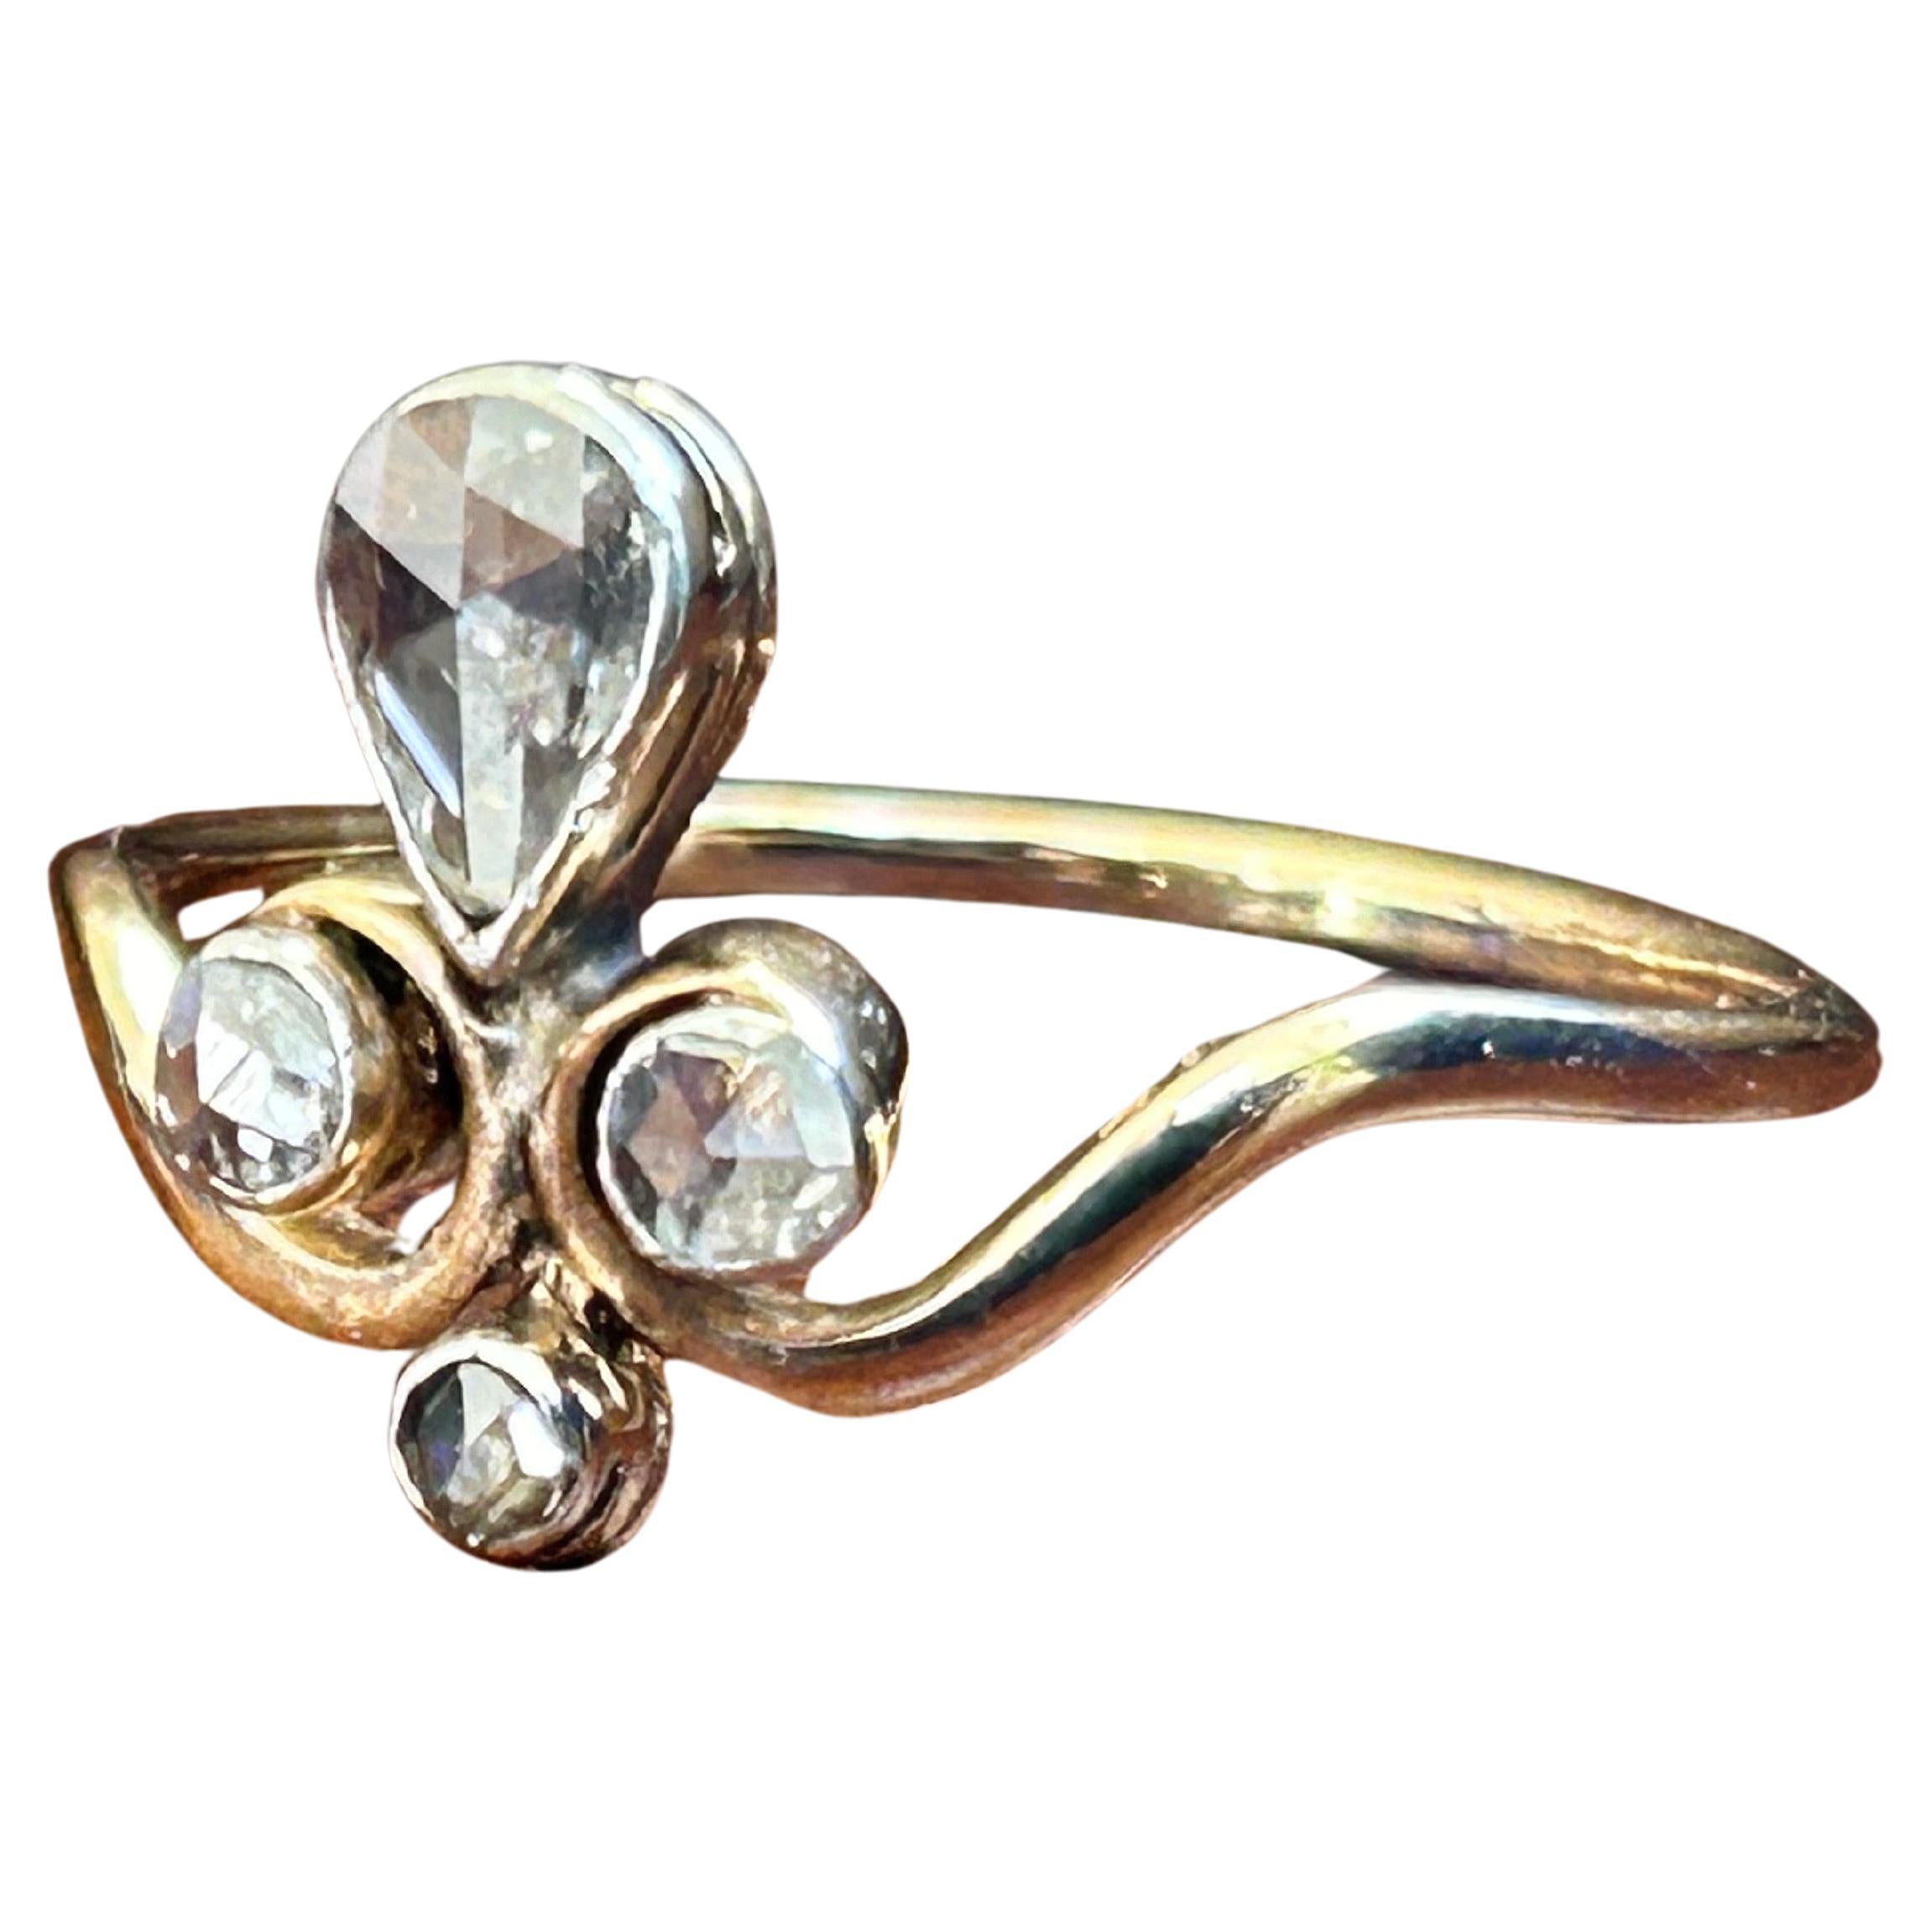 Antique Victorian Rose Cut Diamond Tiara Ring .86 ctw